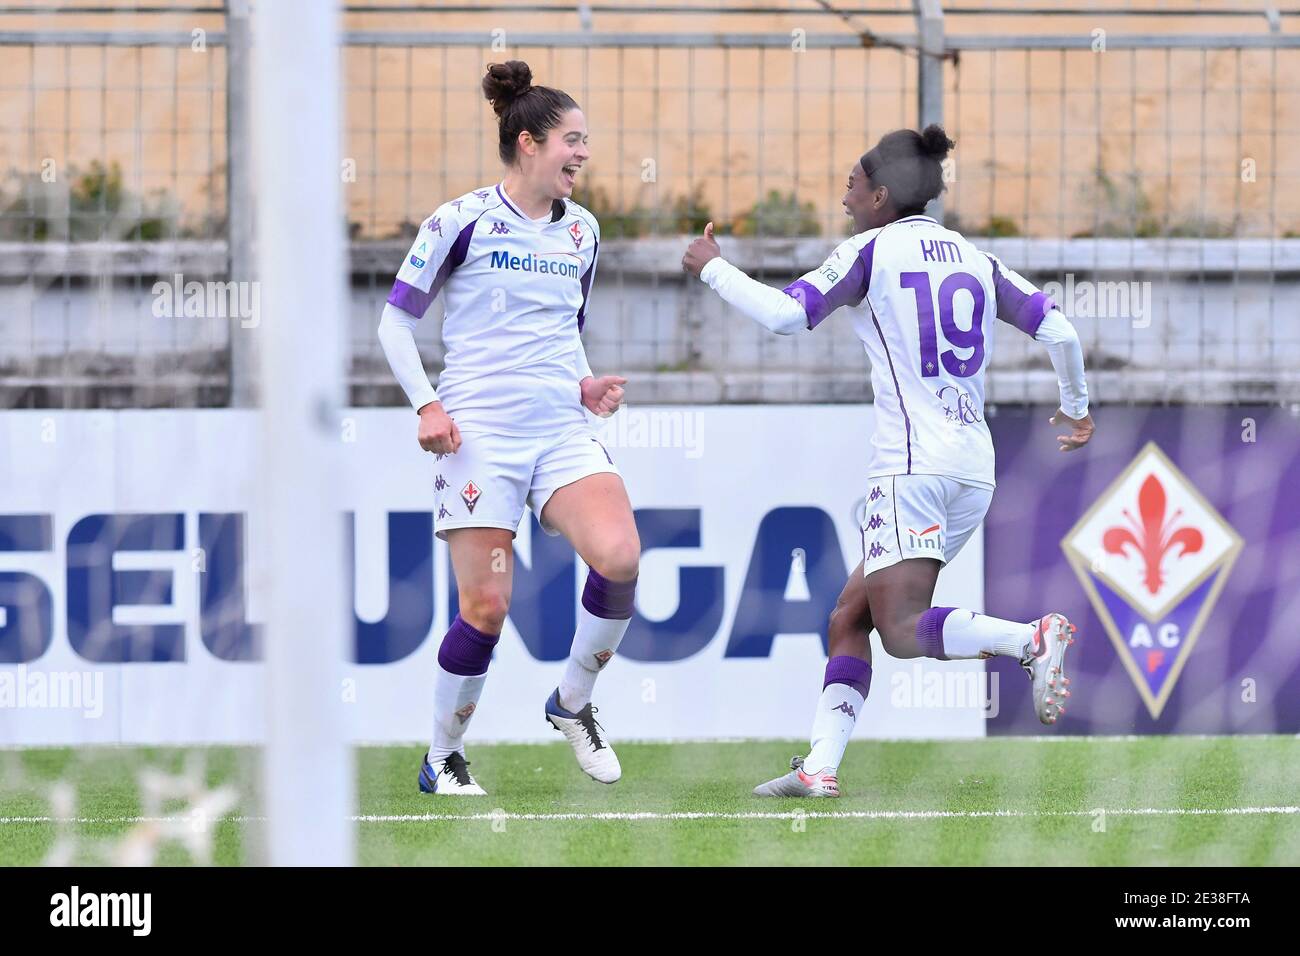 Greta Adami (Fiorentina Femminile) during ACF Fiorentina femminile vs San  Marino Academy, Italian